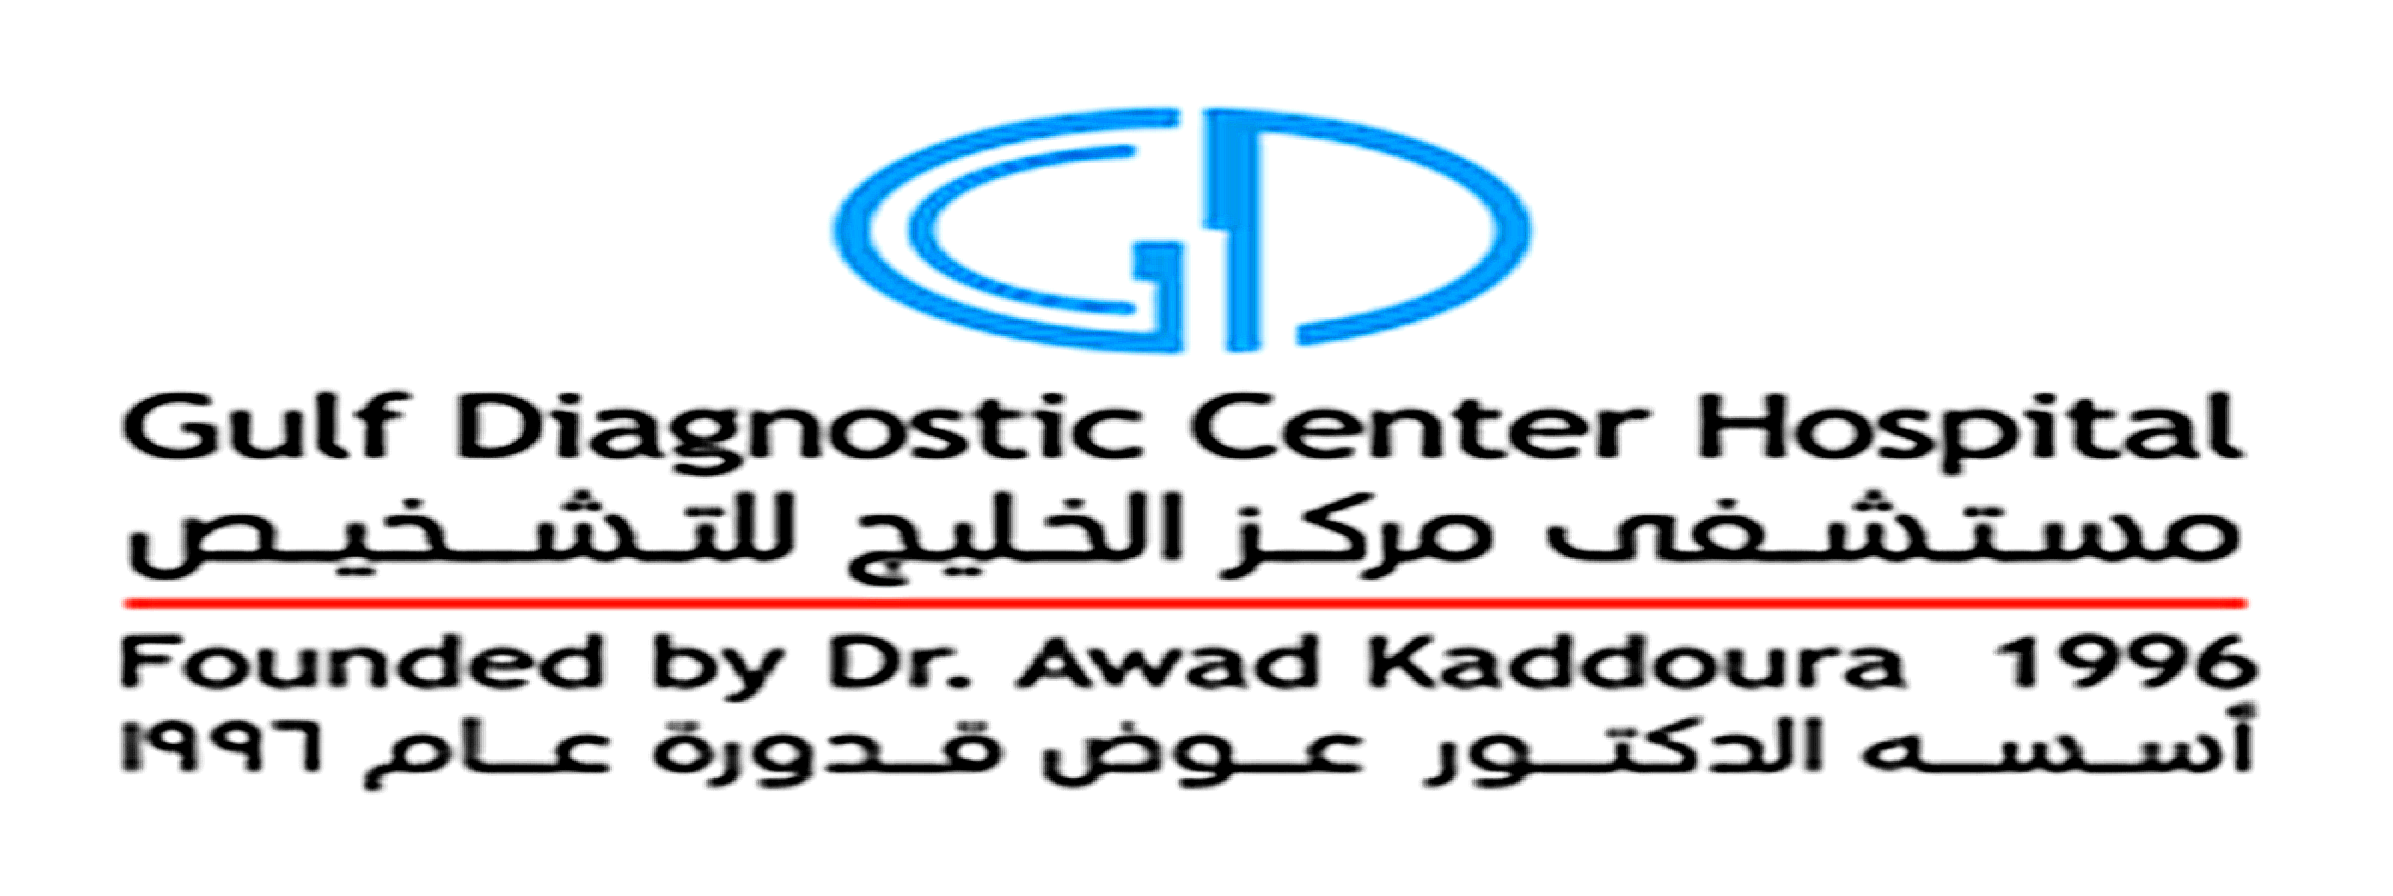 Gulf Diagnostic Center Hospital